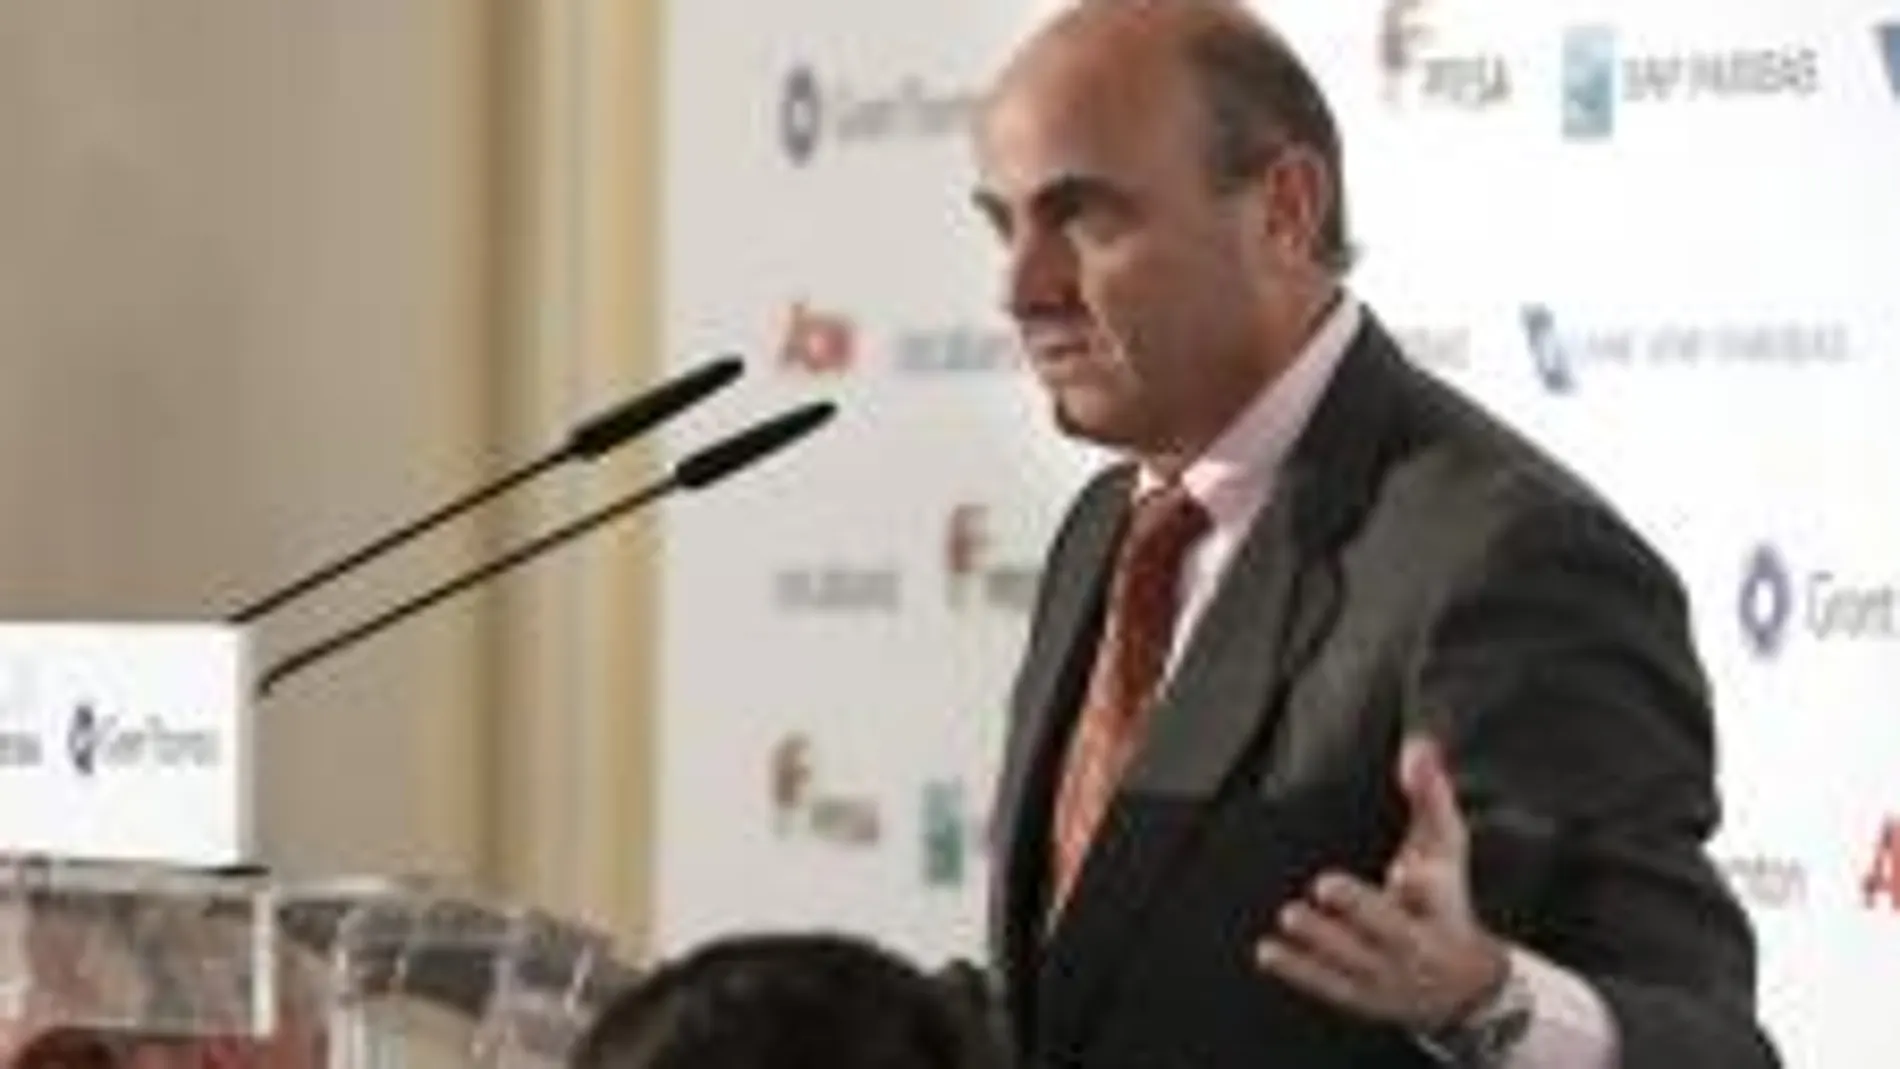 Luis de Guindos, ministro de Economía